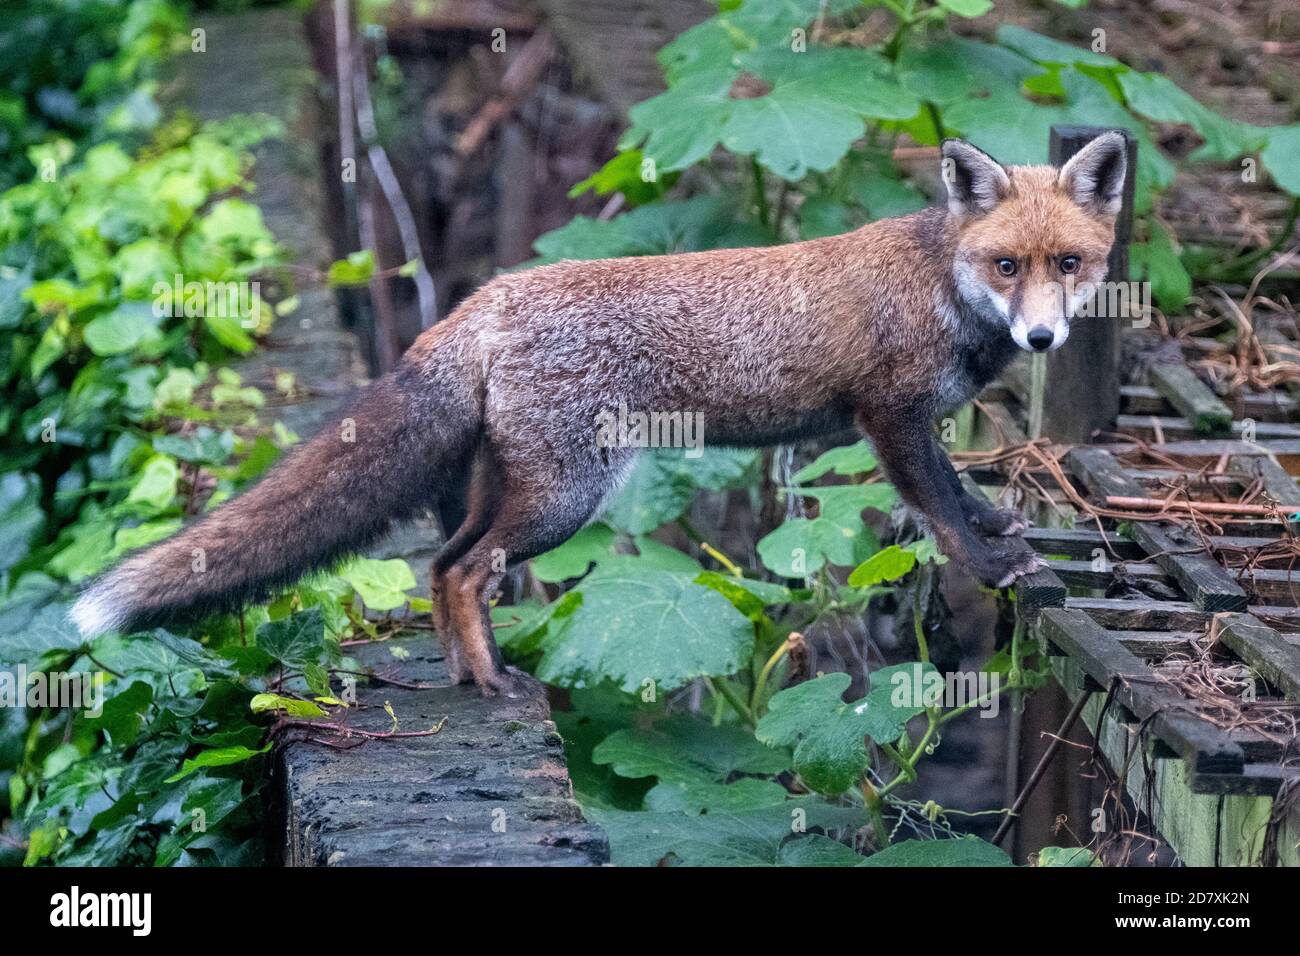 Un renard urbain dans son manteau d'hiver, à Camden Town, Londres, navigue dans les jardins à la recherche de nourriture et de son intérêt instinctif pour les êtres humains Banque D'Images